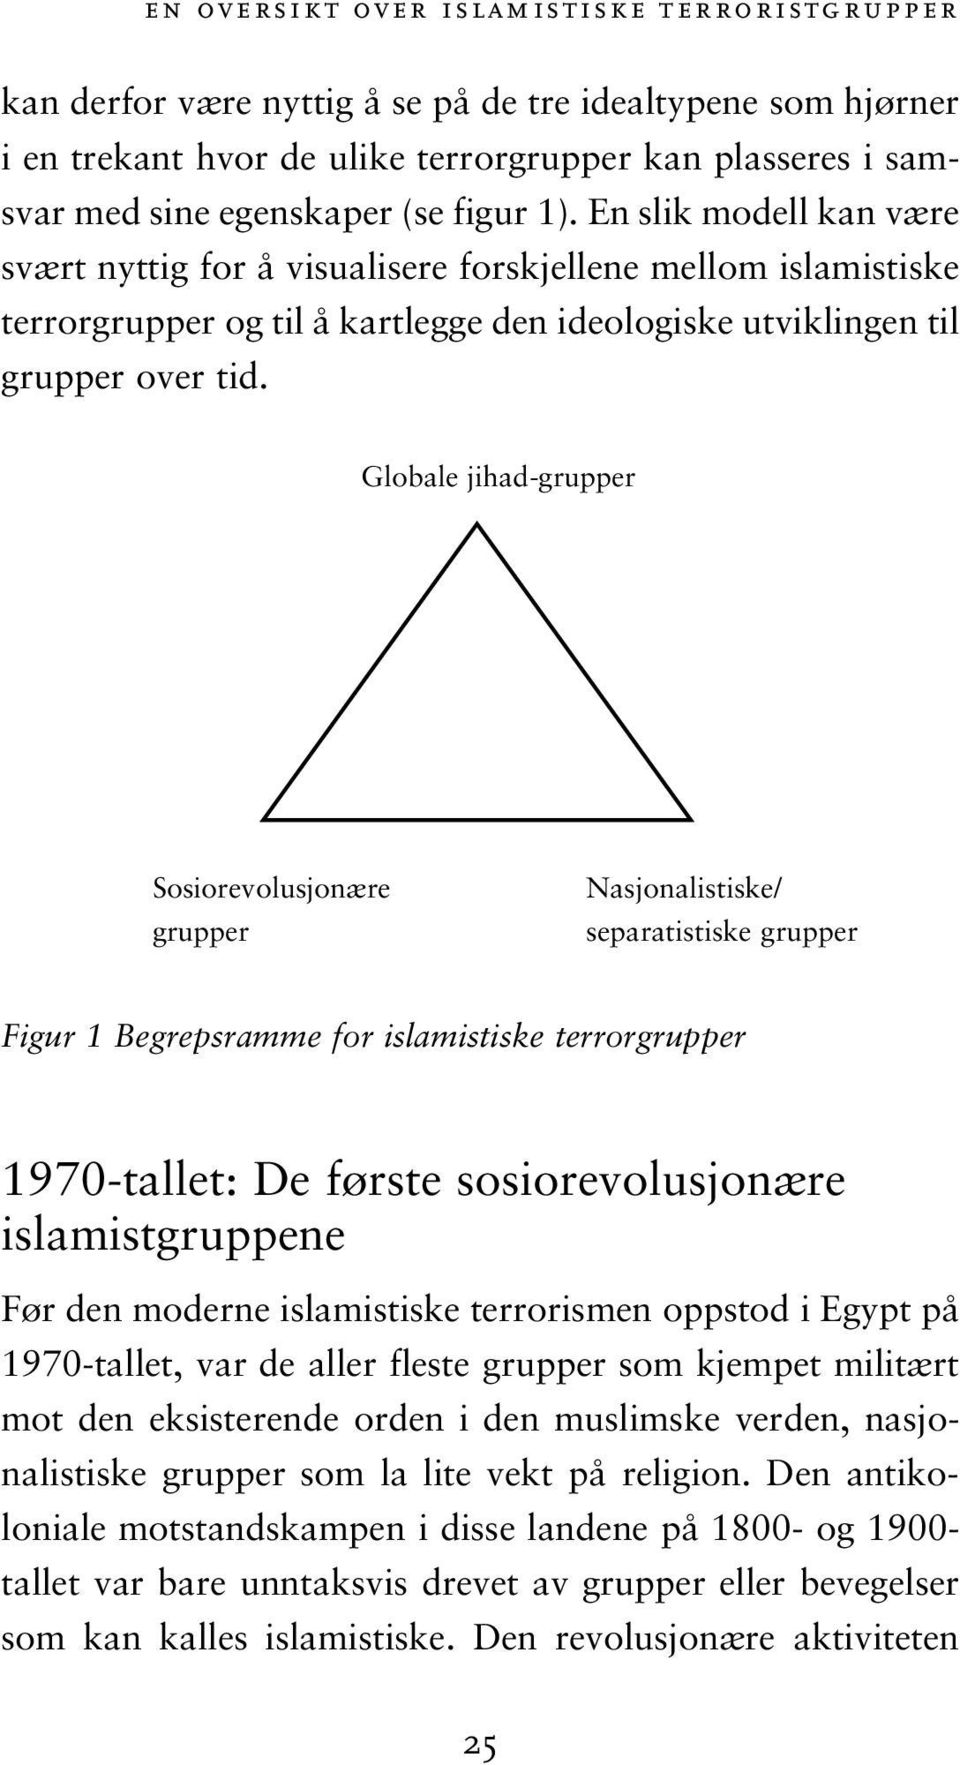 Globale jihad-grupper Sosiorevolusjonære grupper Nasjonalistiske/ separatistiske grupper Figur 1 Begrepsramme for islamistiske terrorgrupper 1970-tallet: De første sosiorevolusjonære islamistgruppene